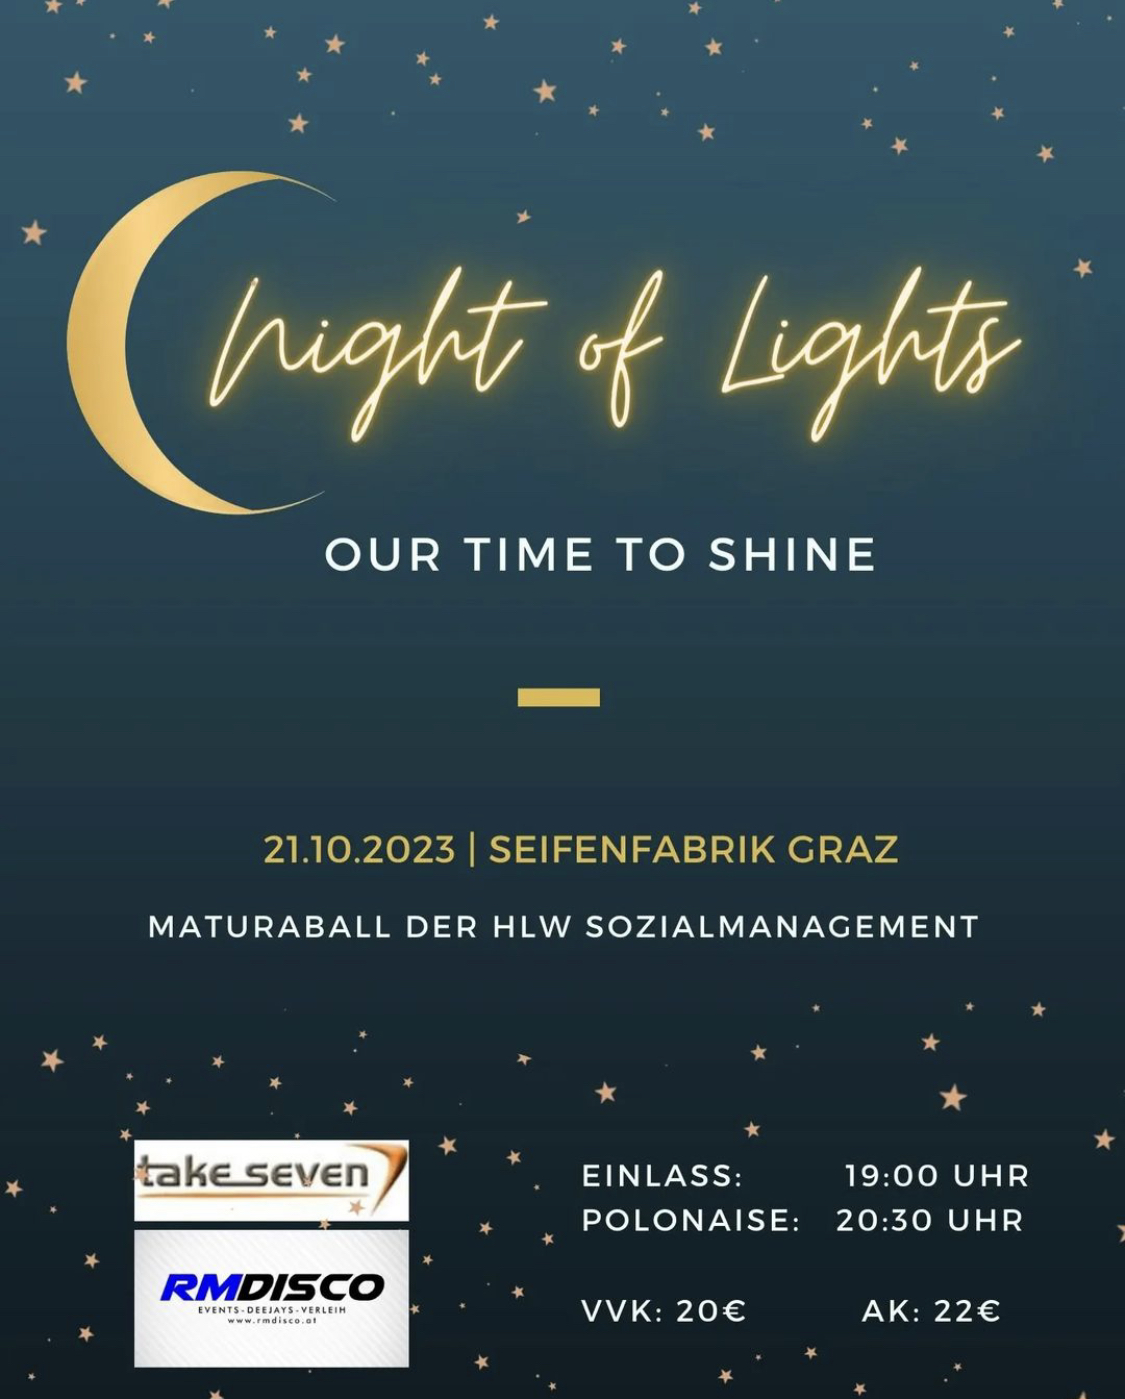 2023-10-21_Maturaball_HLW_Sozialmanagement_Seifenfabrik_Graz_Night_of_Lights